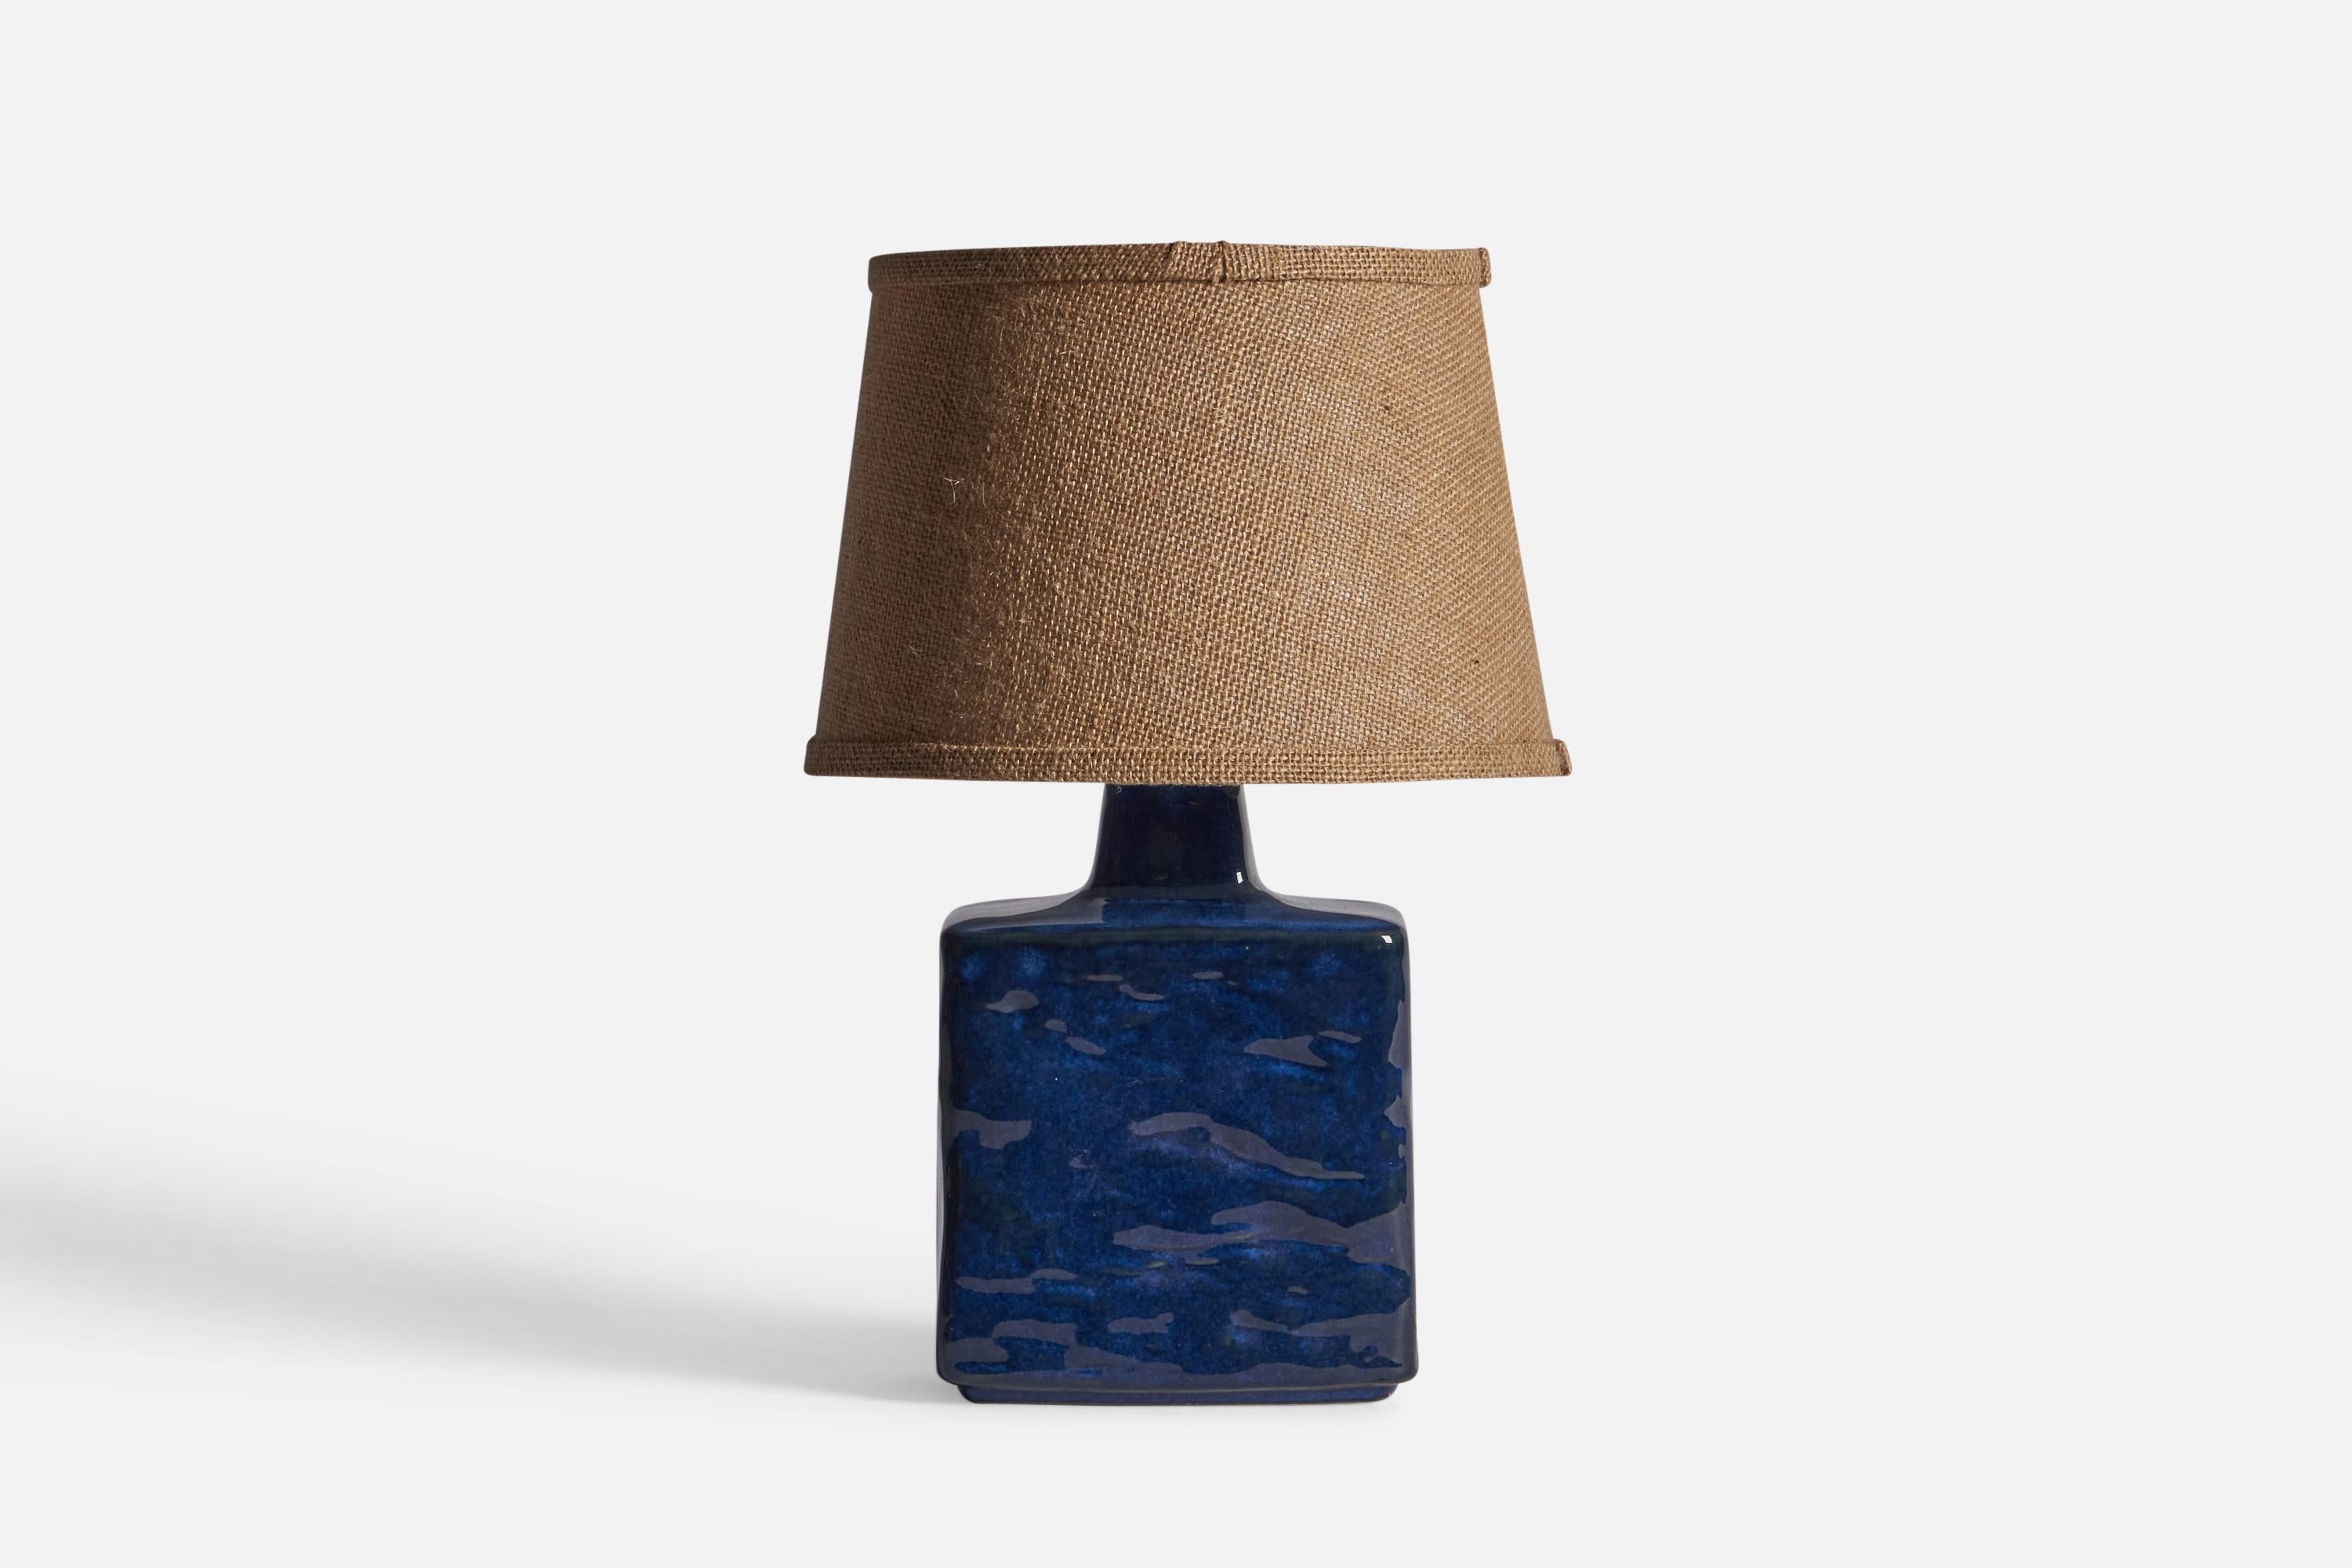 Lampe en grès émaillé bleu, conçue et produite par Desiree Stentøj, Danemark, c. 1960.

Dimensions de la lampe (pouces) : 11.5